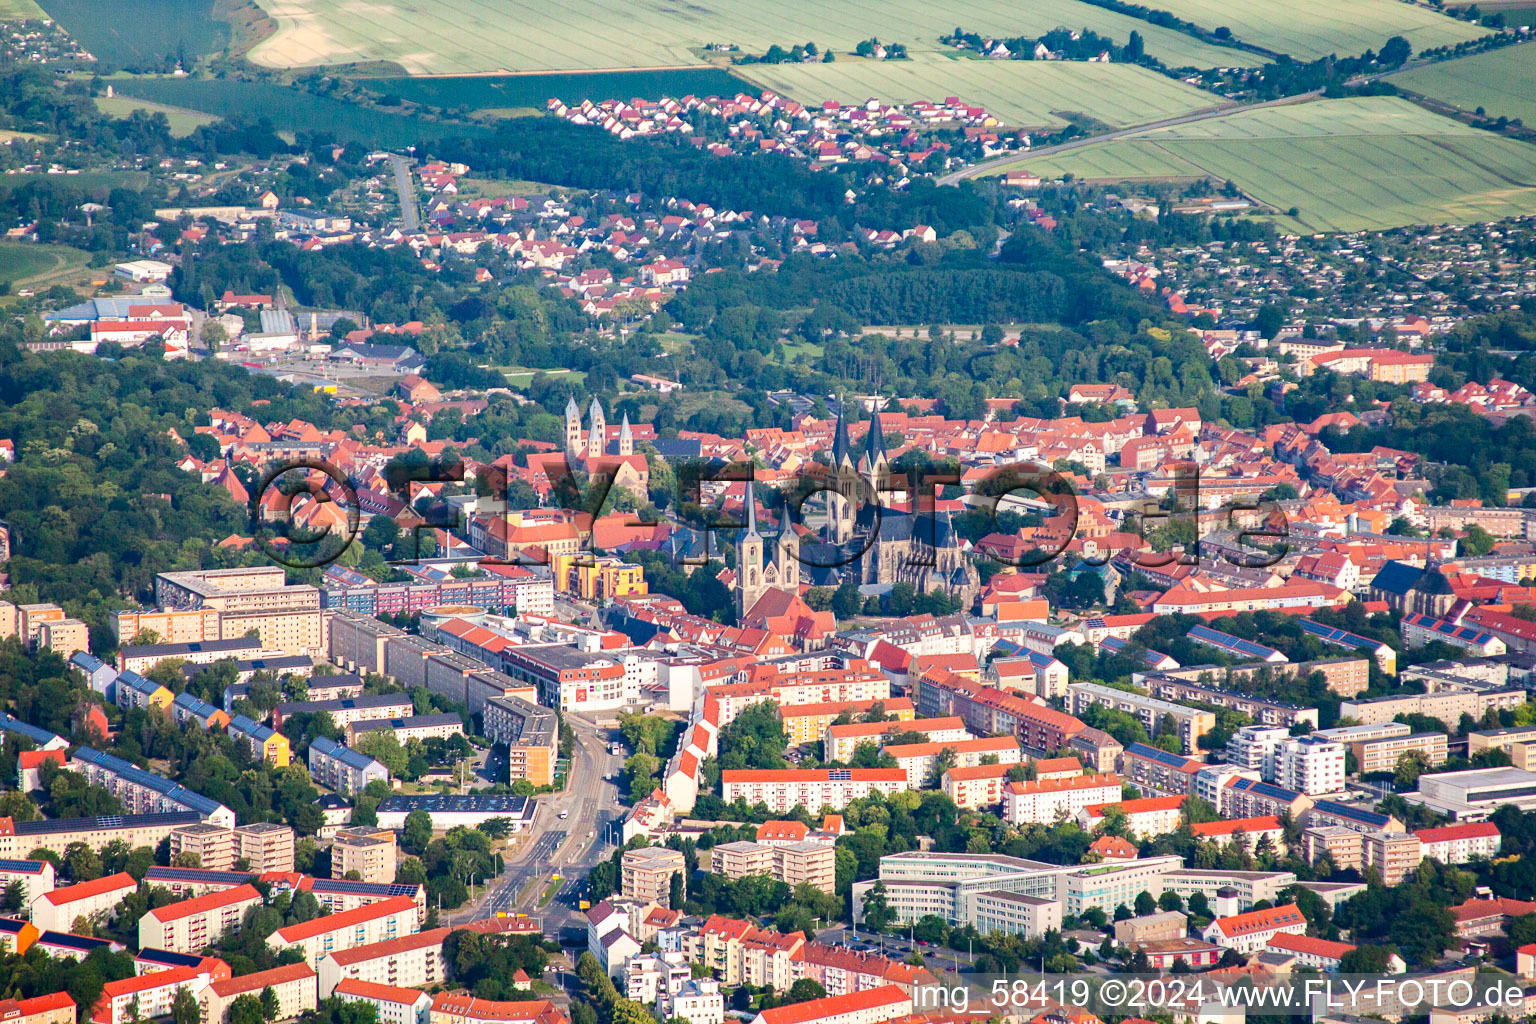 Vue aérienne de Bâtiment de l'église de la cathédrale et trésor de la cathédrale à Halberstadt dans le département Saxe-Anhalt, Allemagne